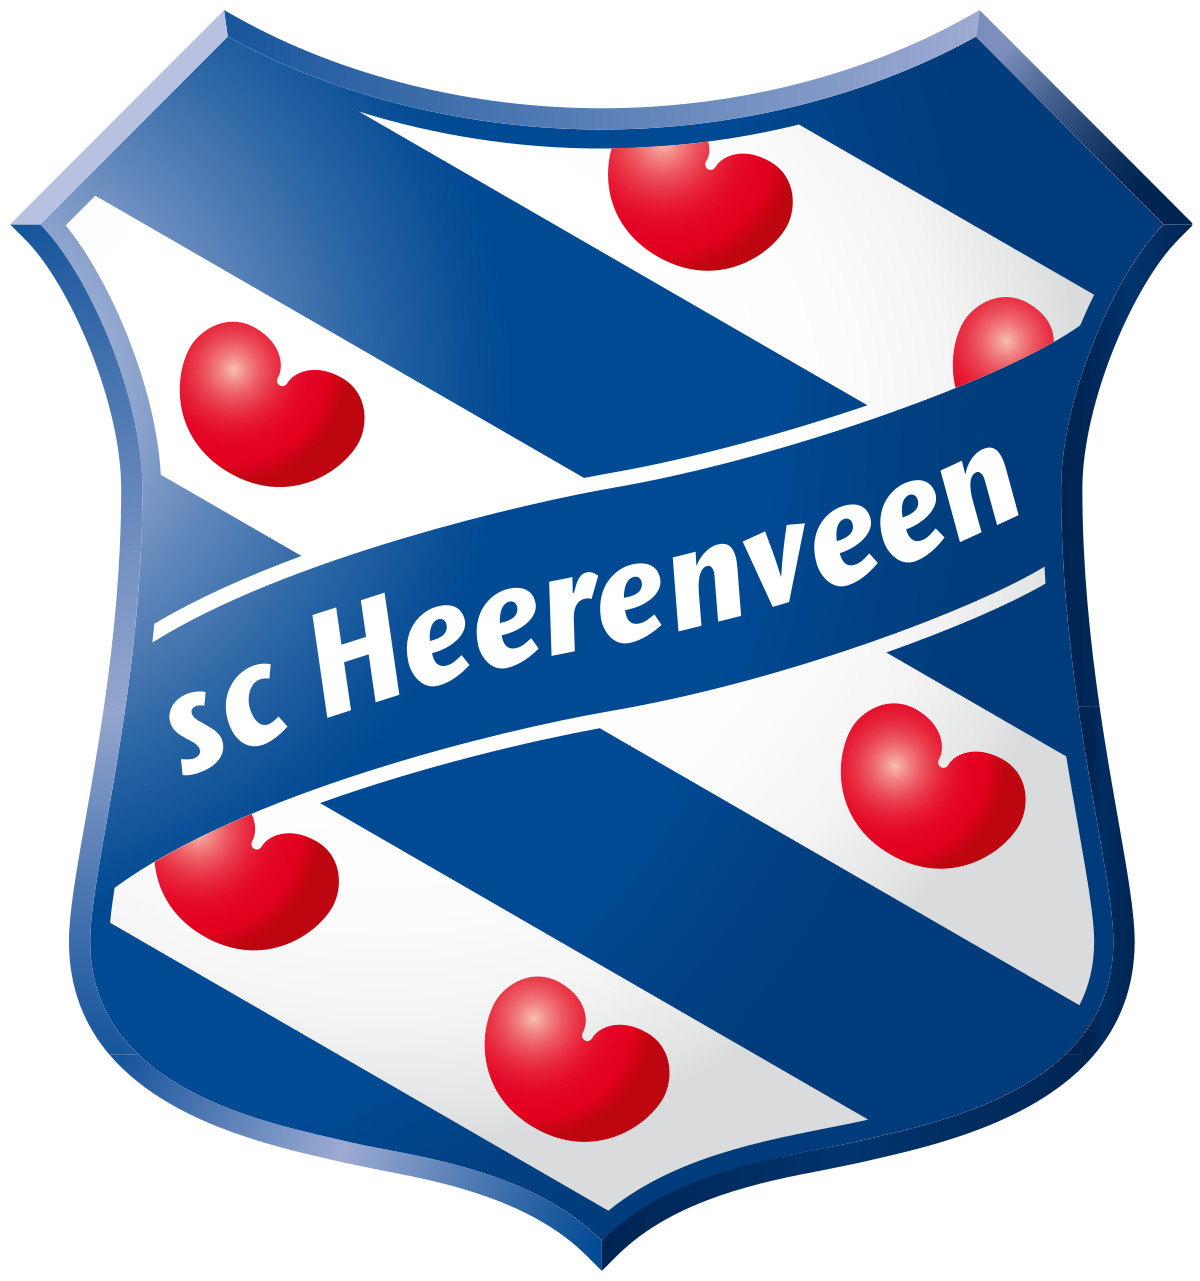 sc-heerenveen-21-football-club-facts